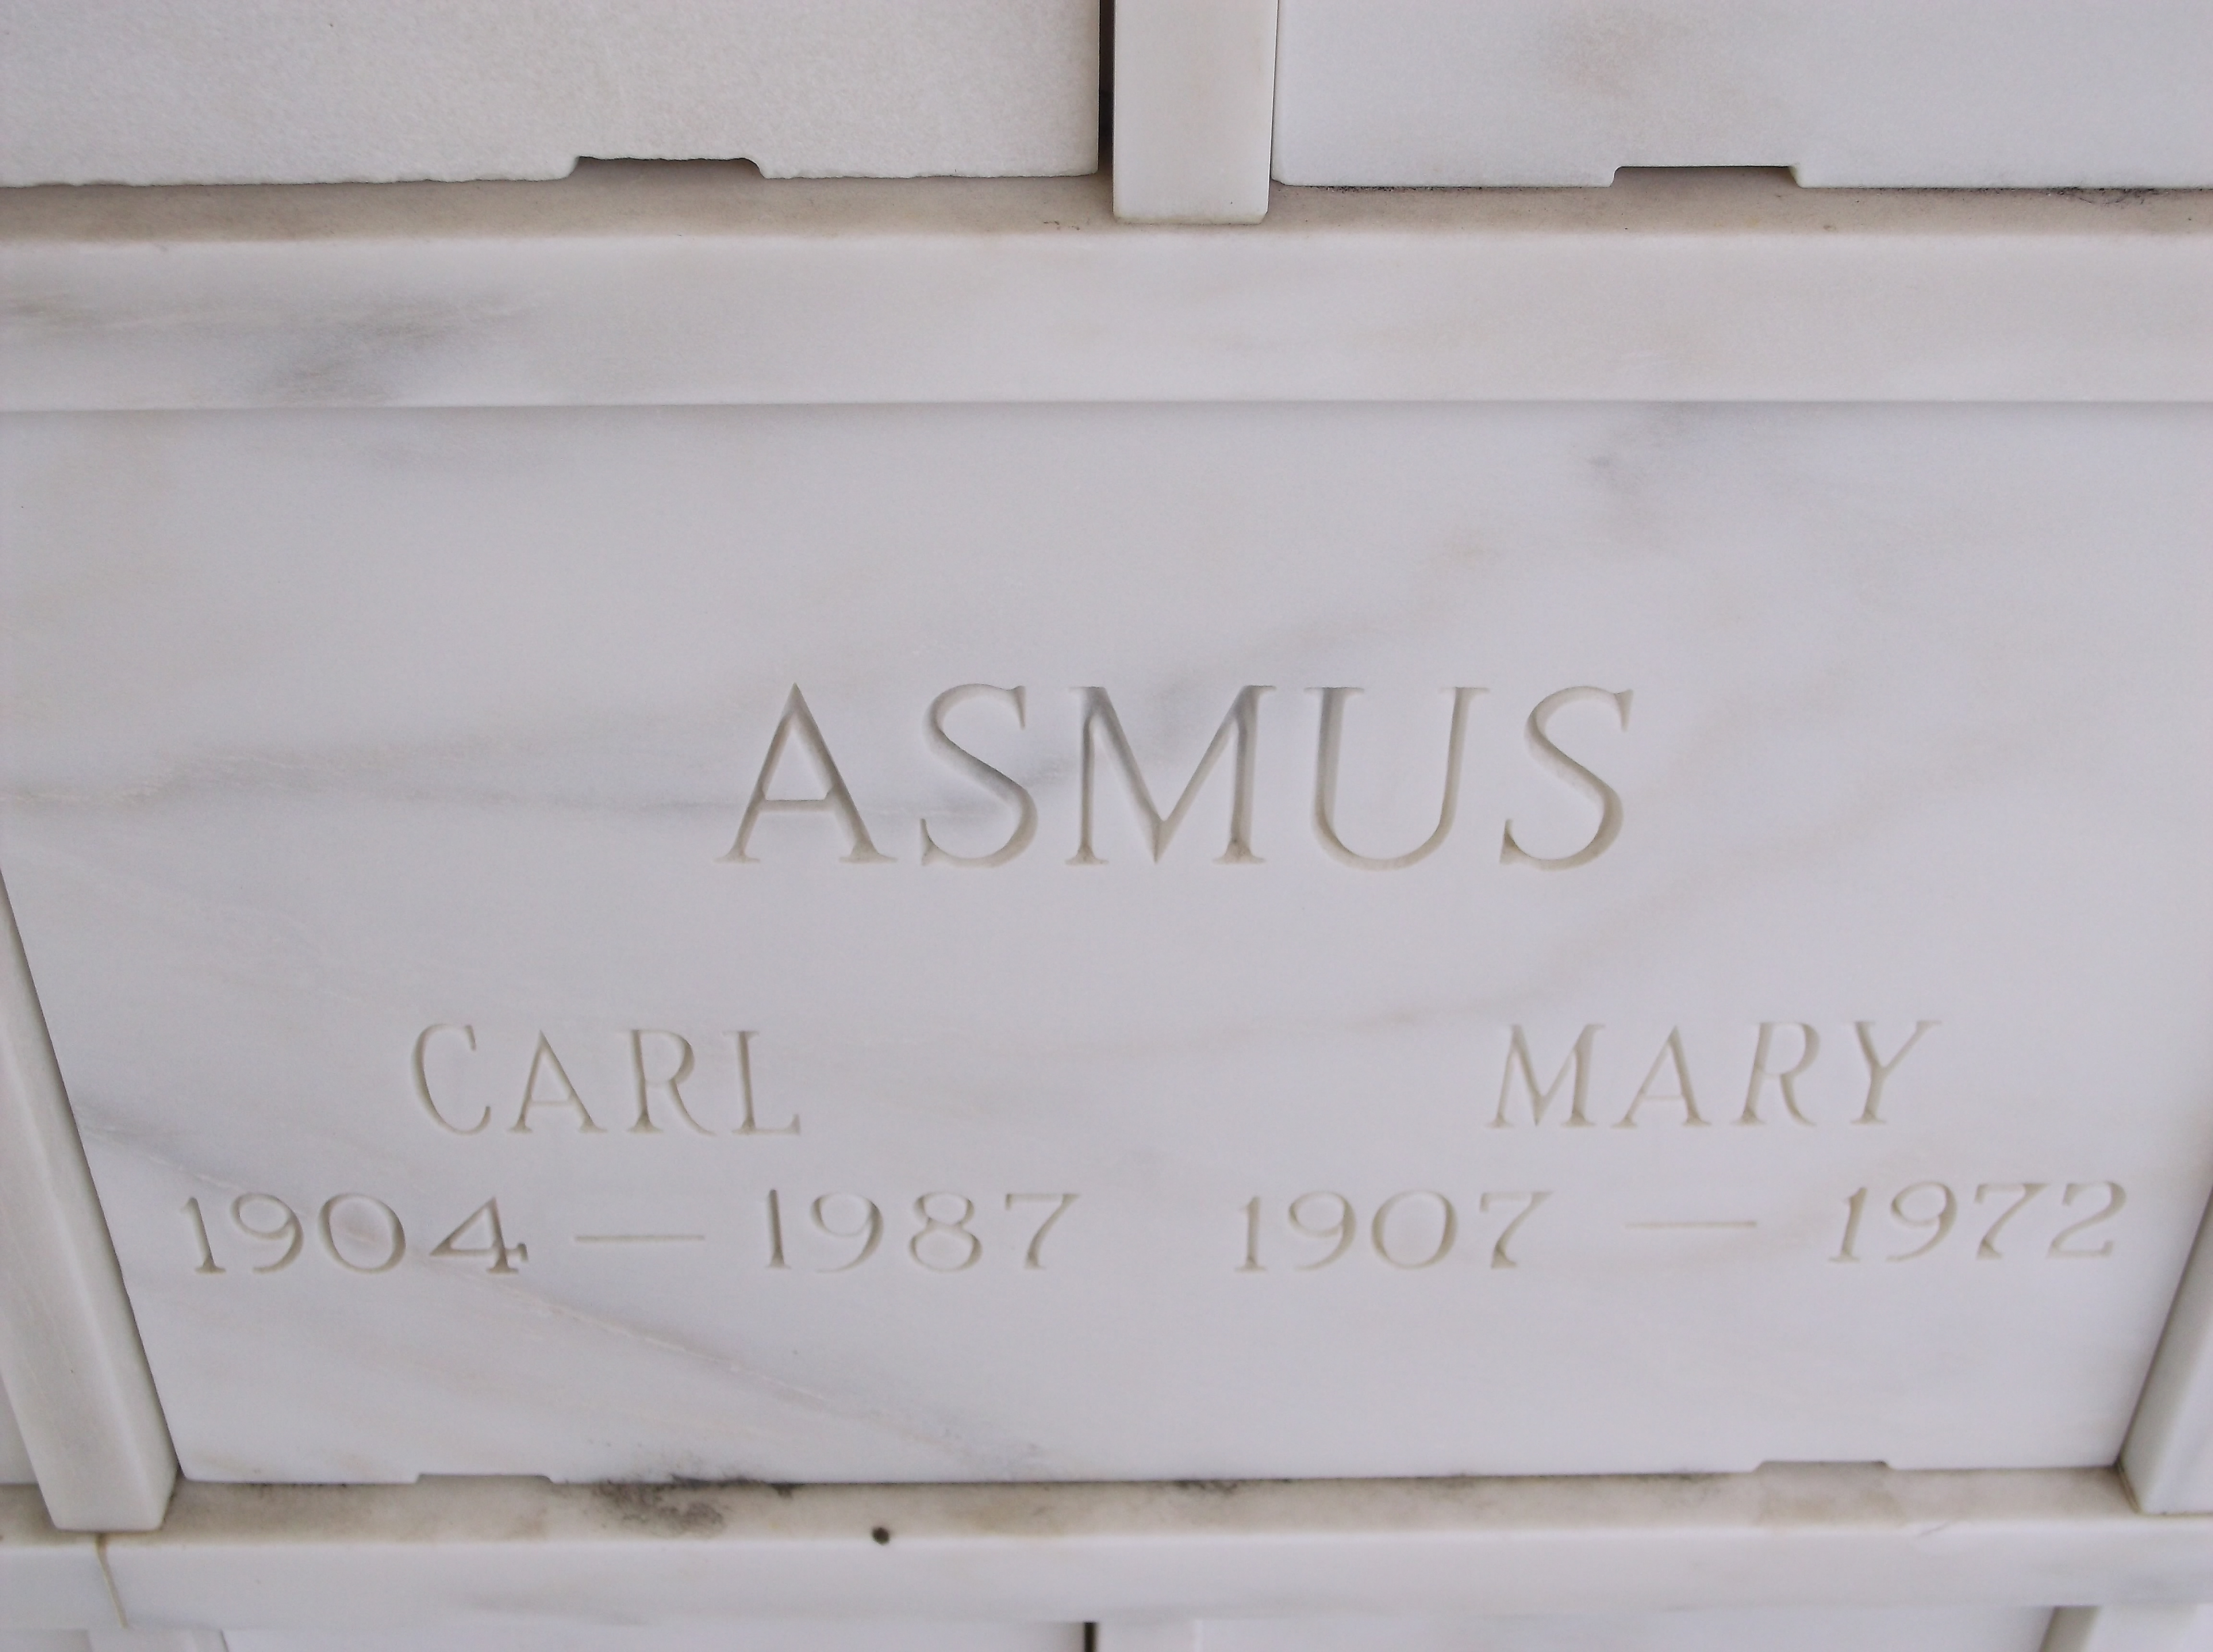 Mary Asmus